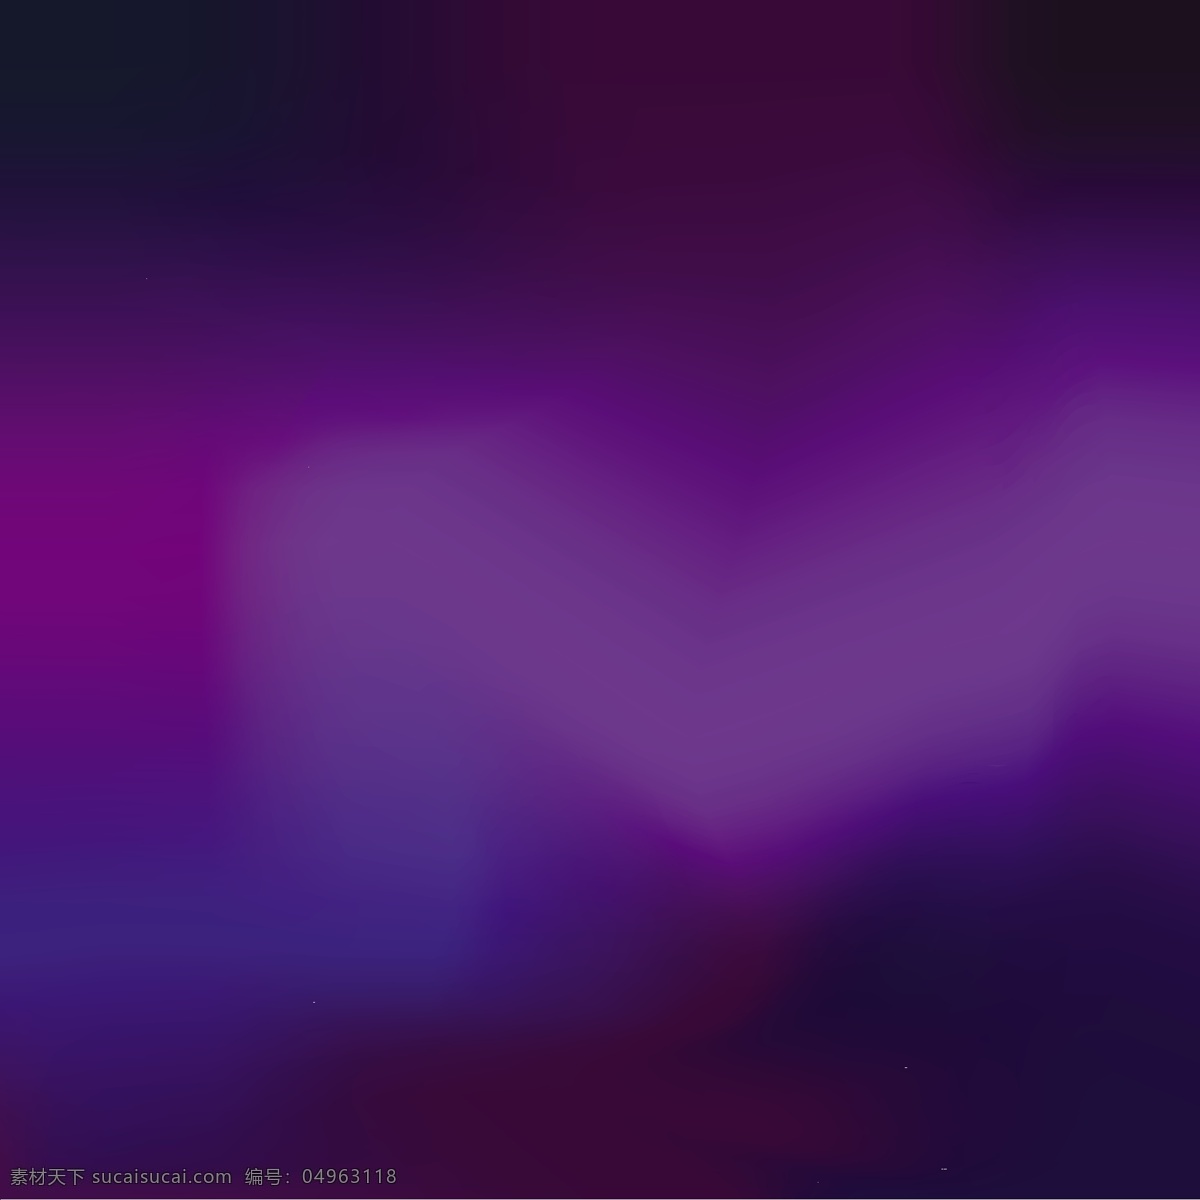 紫色抽象背景 背景 抽象 颜色 墙纸 紫色 彩色 模糊